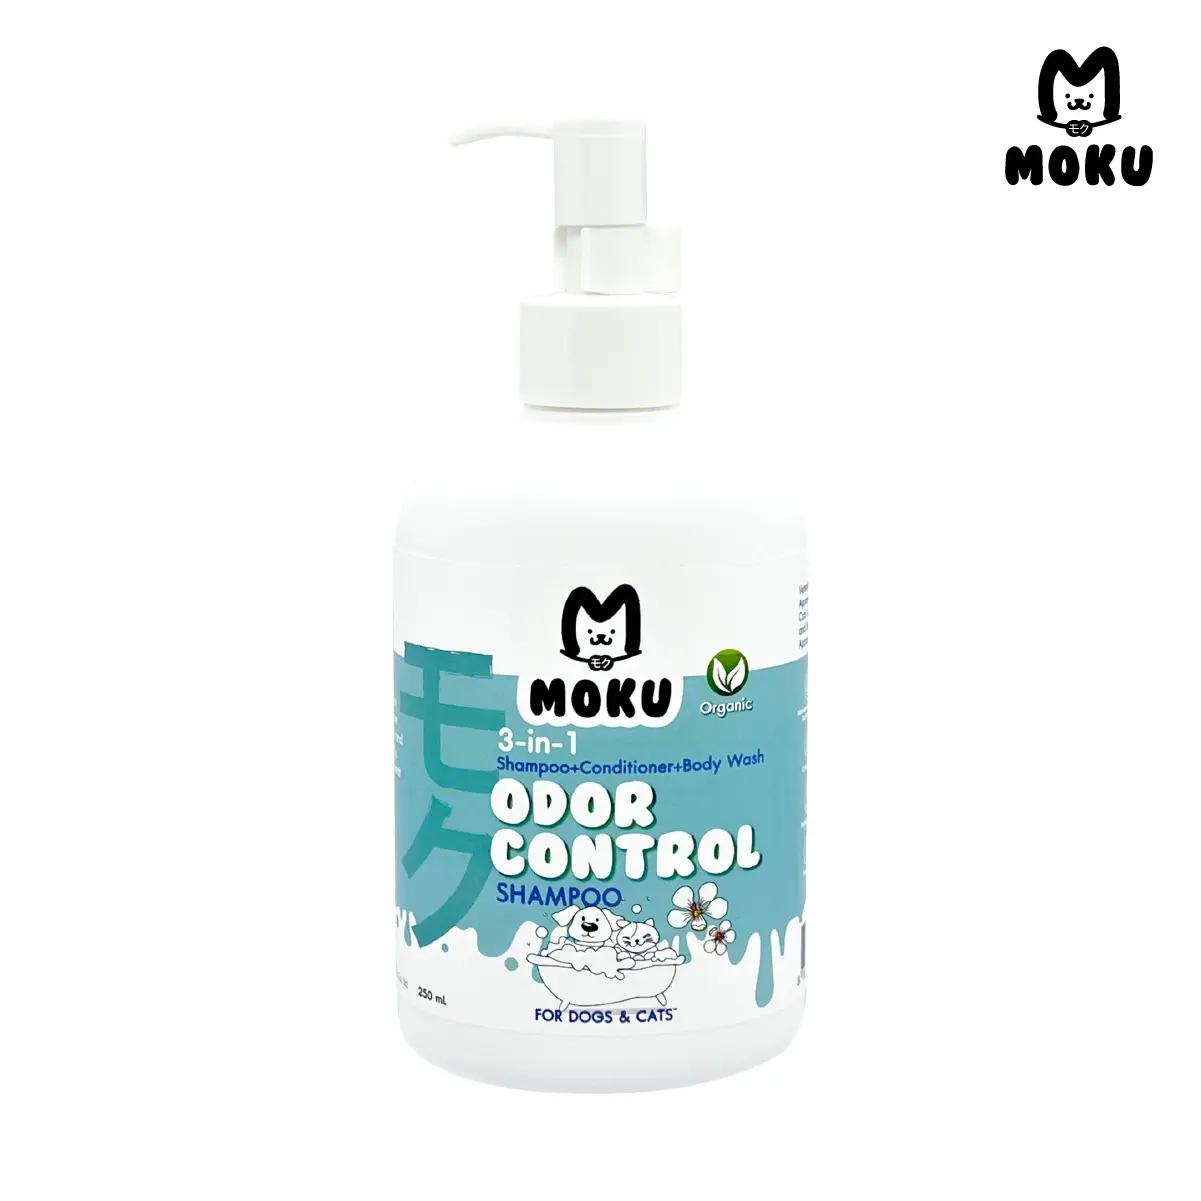 MOKU 3-in-1 Odor Control Shampoo โมกุ ทรี-อิน-วัน โอดอร์ คอนโทรล แชมพู แชมพูสำหรับสัตว์เลี้ยง สูตรขจัดกลิ่นไม่พึงประสงค์